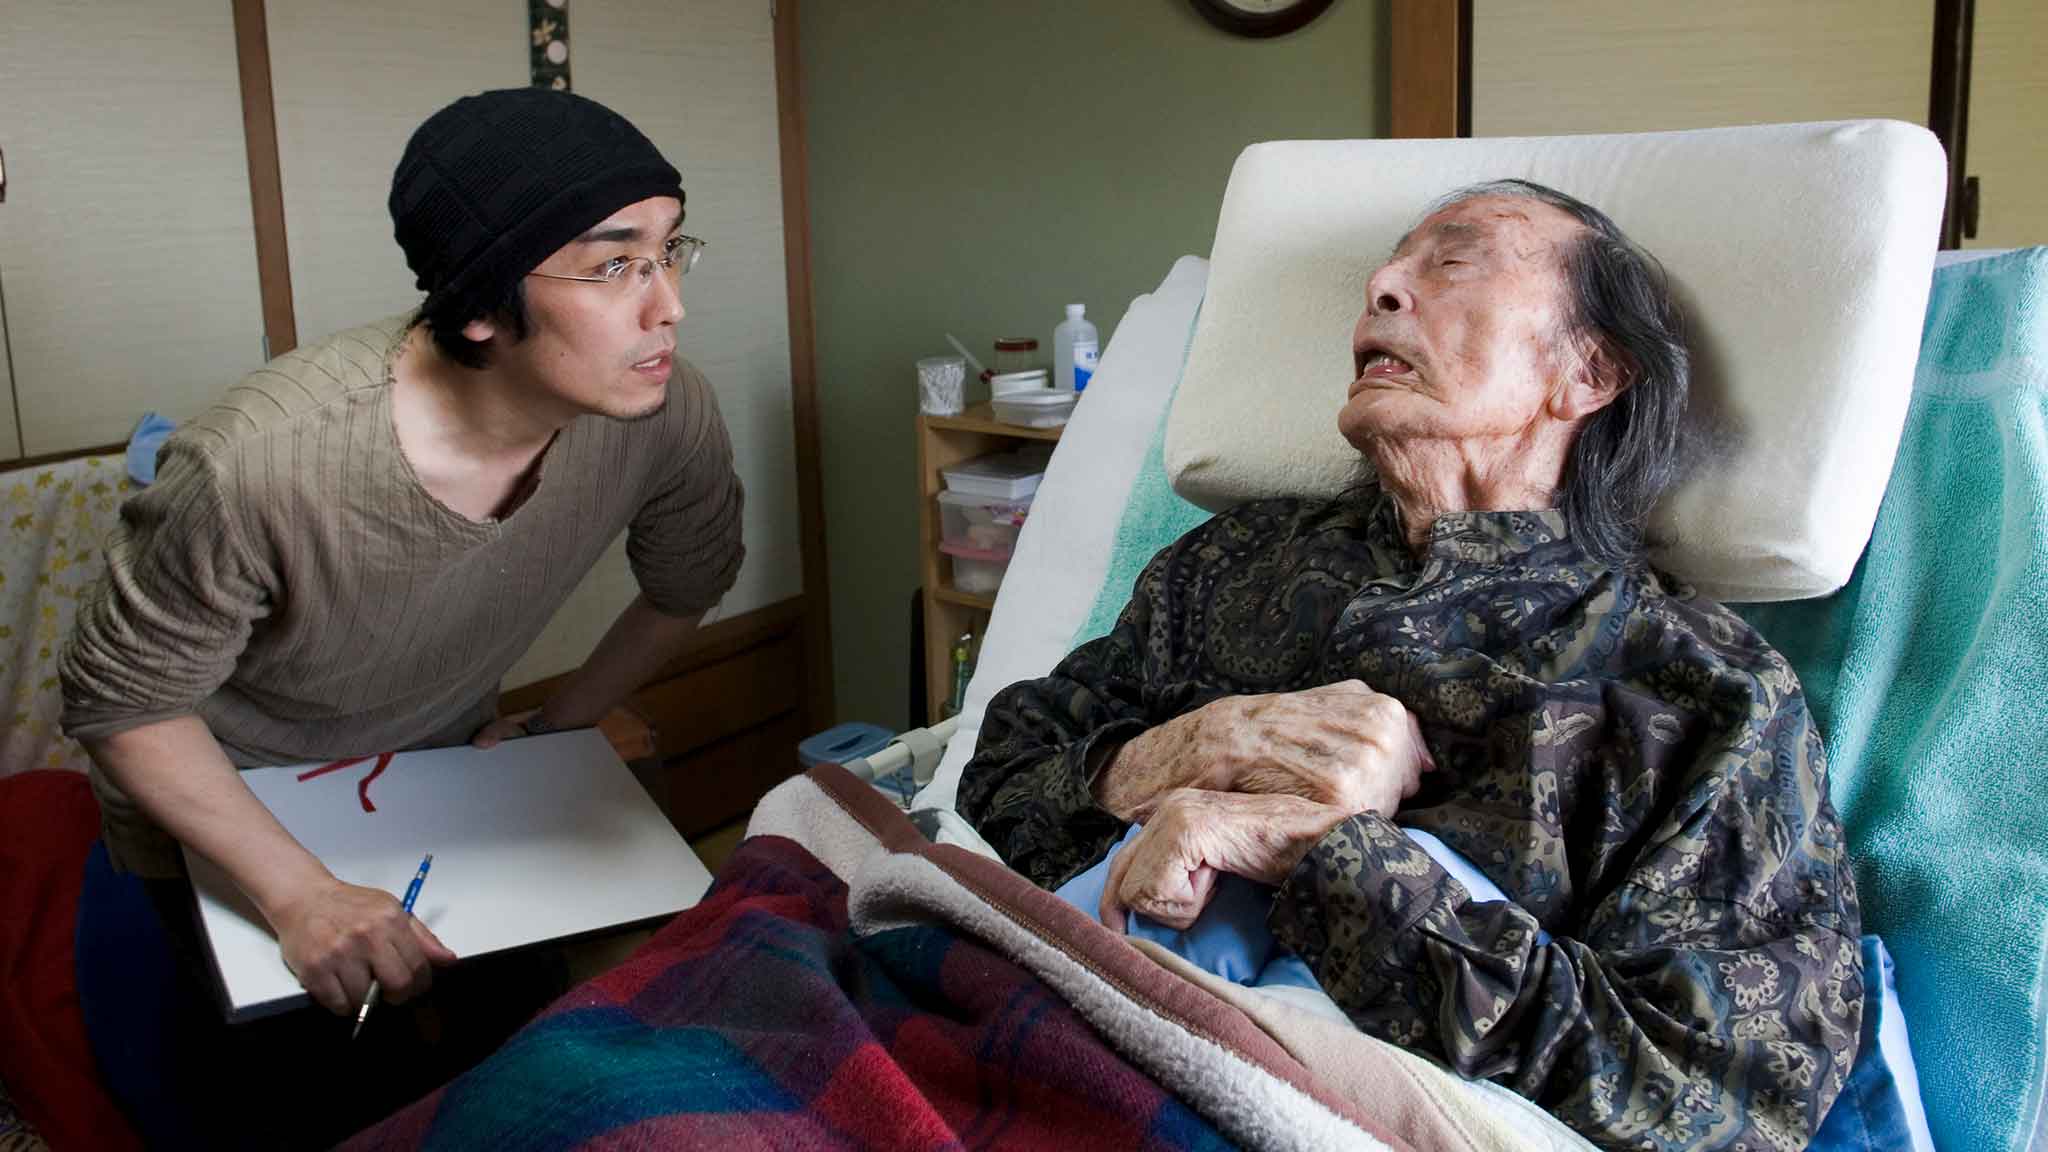 諏訪敦さん(左) は、百歳を超え要介護状態にあった舞踏家・大野一雄さんの元へ訪れ、スケッチと取材を行なった。2006年12月28日 川本聖哉撮影